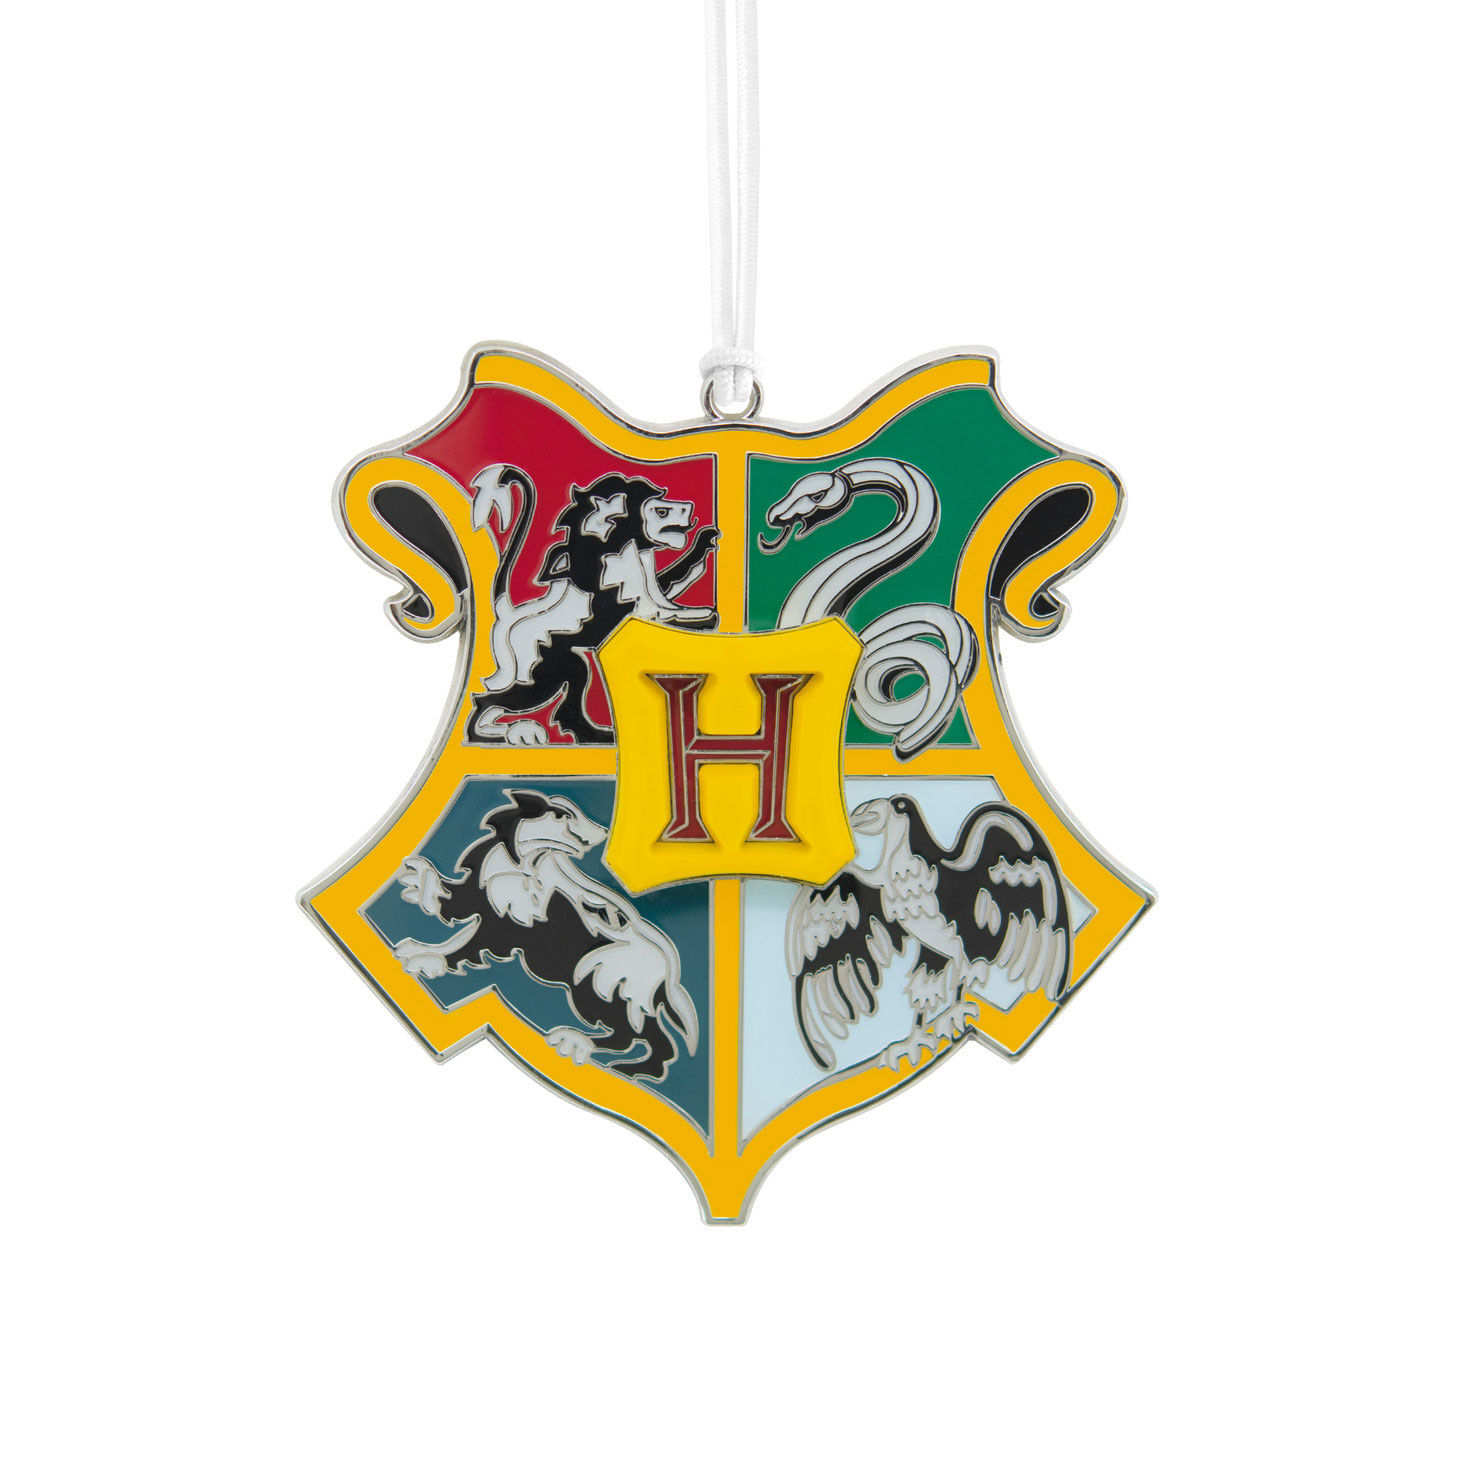 Harry Potter House of Ravenclaw Logo Crest Refrigerator Magnet